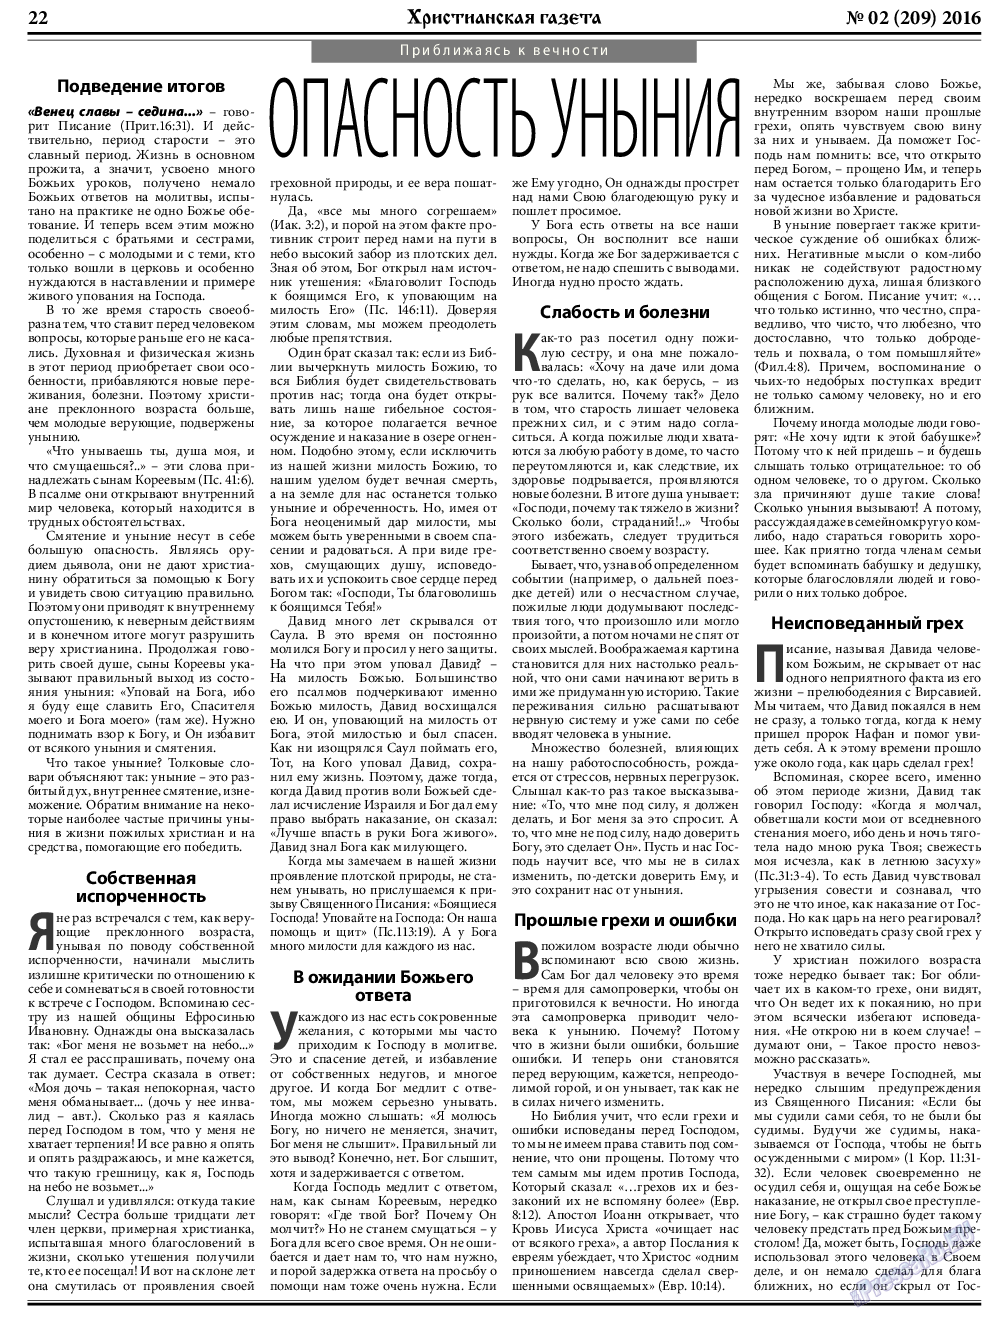 Христианская газета, газета. 2016 №2 стр.30